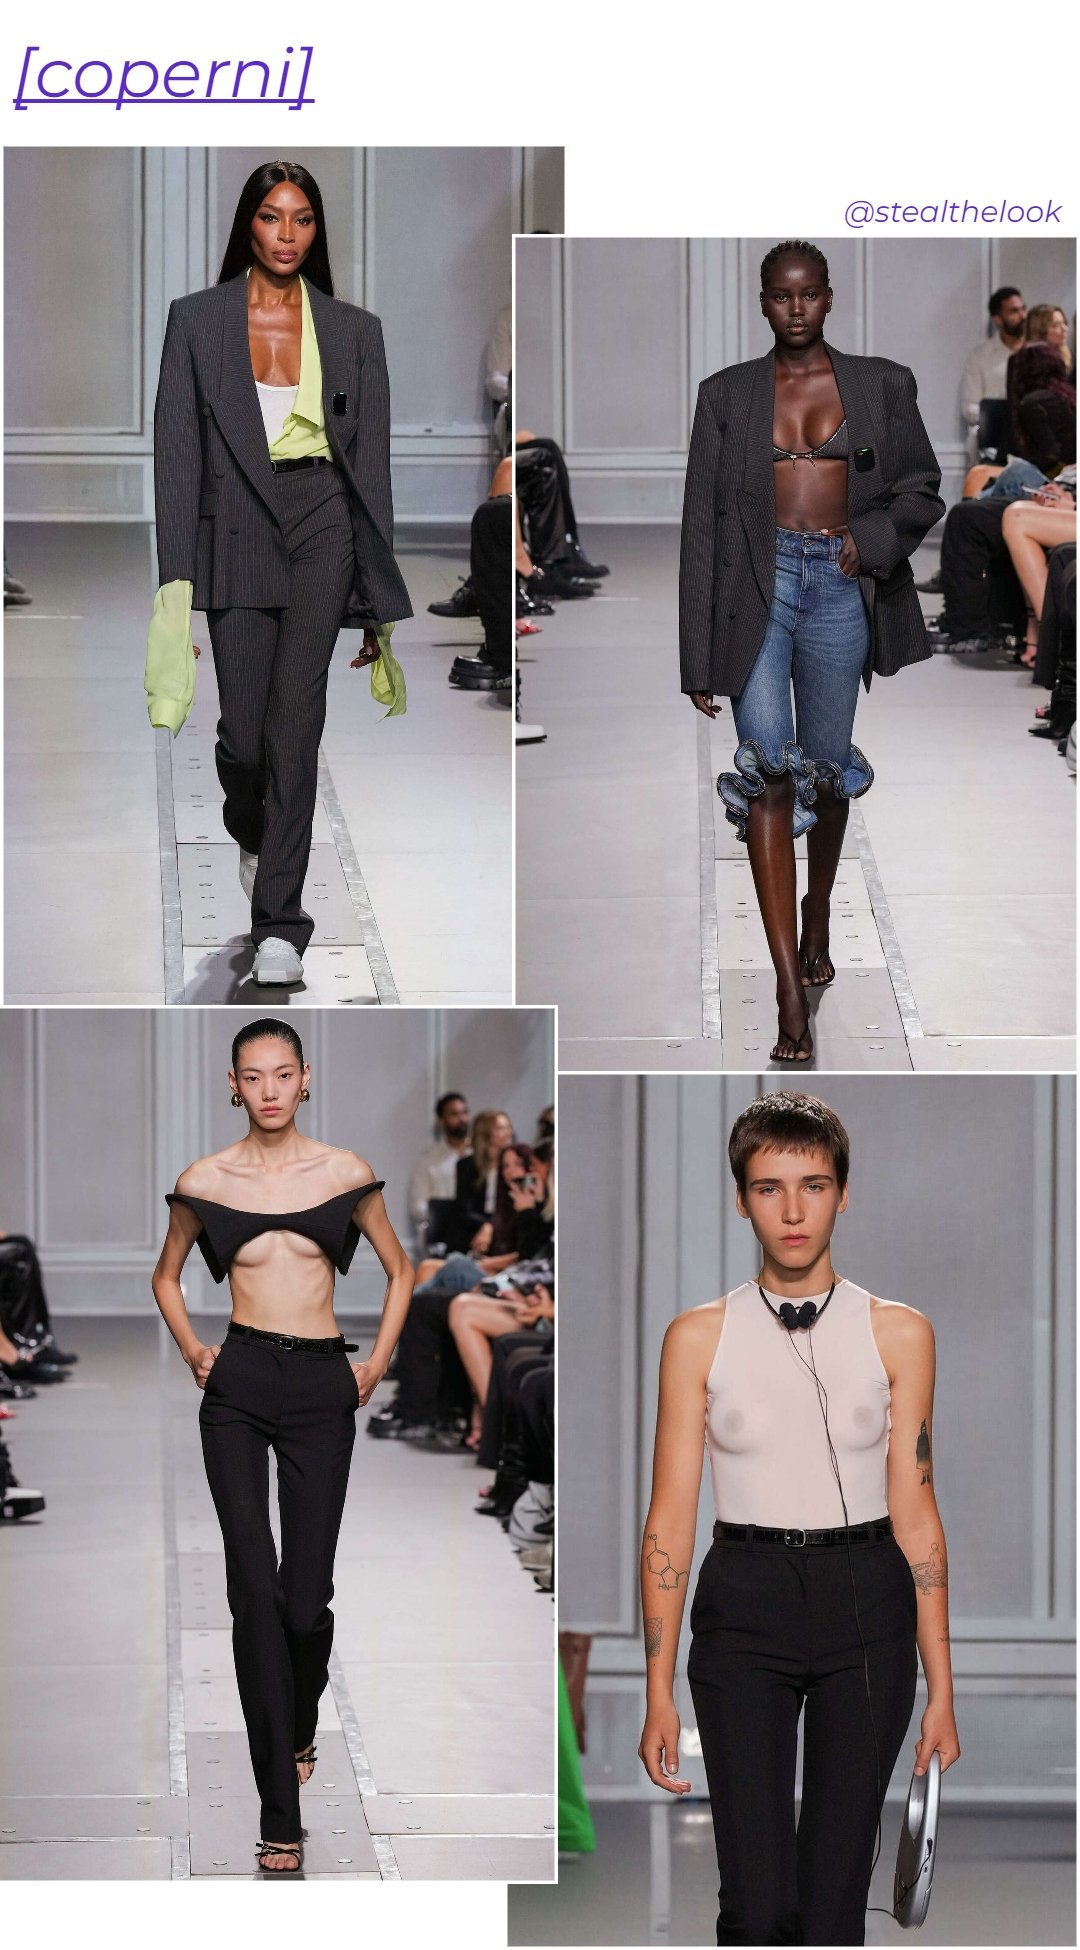 Coperni - roupas diversas - Paris Fashion Week - verão - colagem de imagens - https://stealthelook.com.br